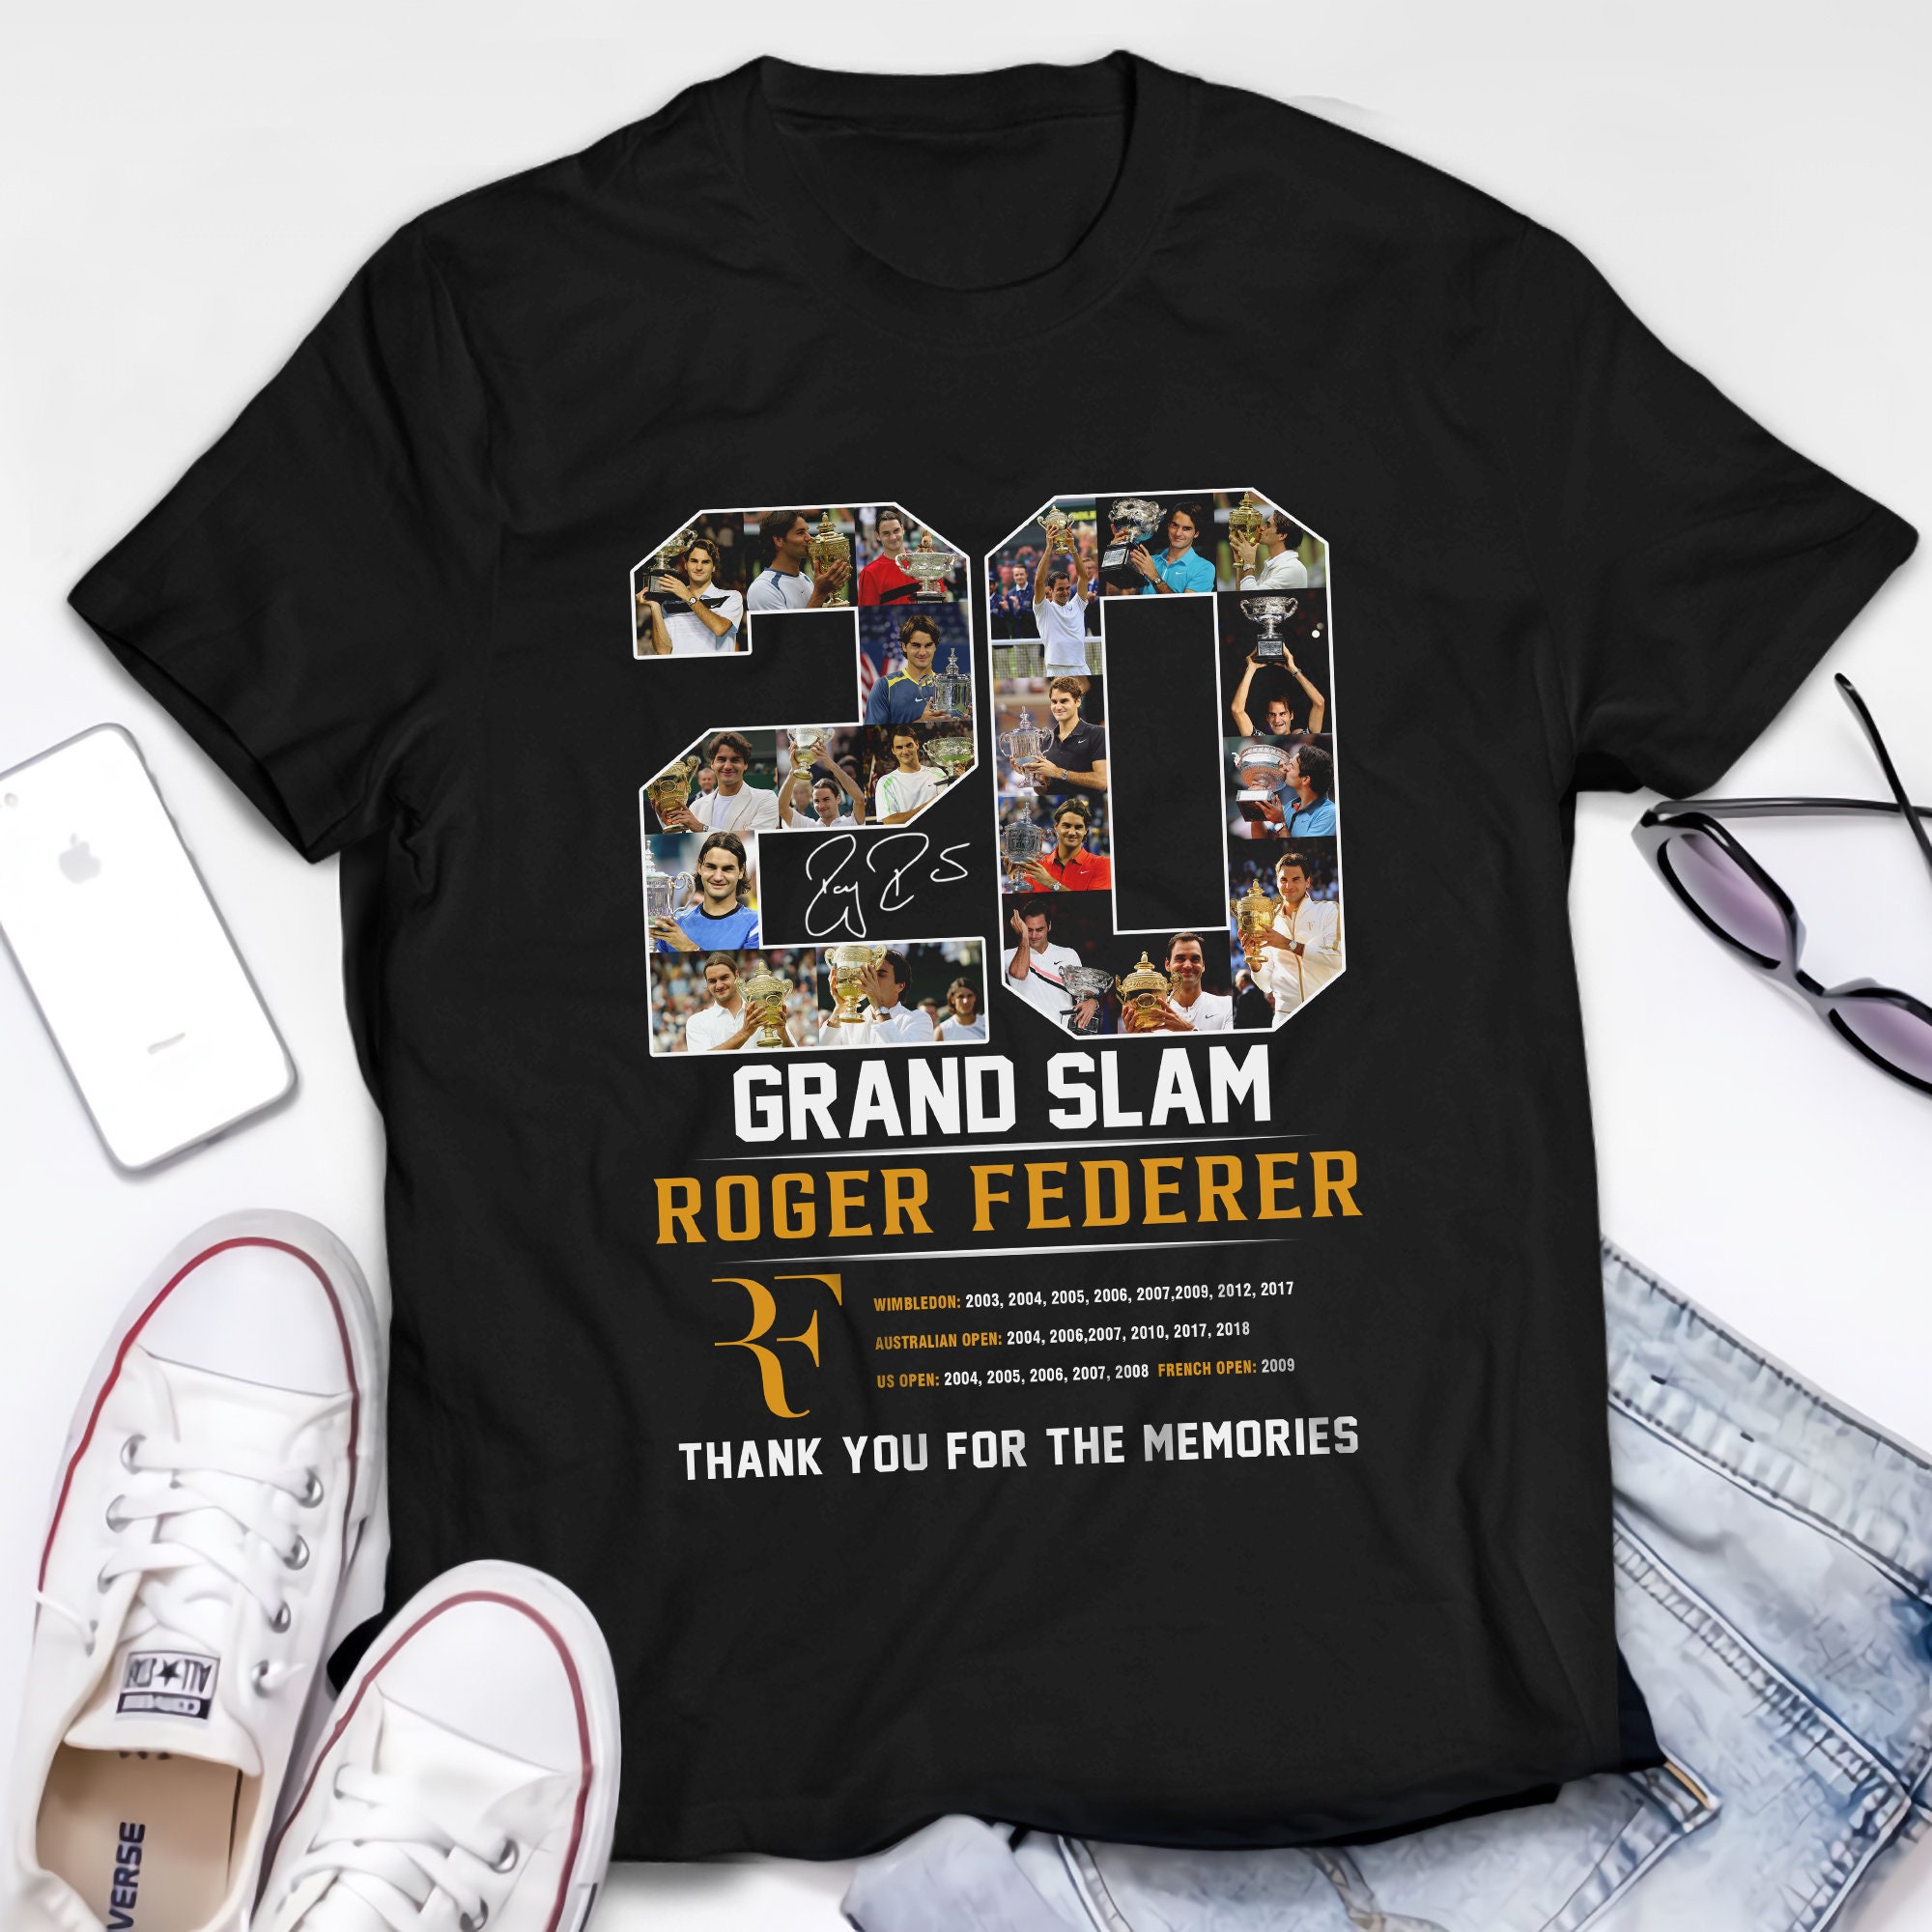 Discover Roger Federer - Danke Für All Die Unzähligen Erinnerungen - Roger Federer zum Ruhestand aus Tennis T-Shirt